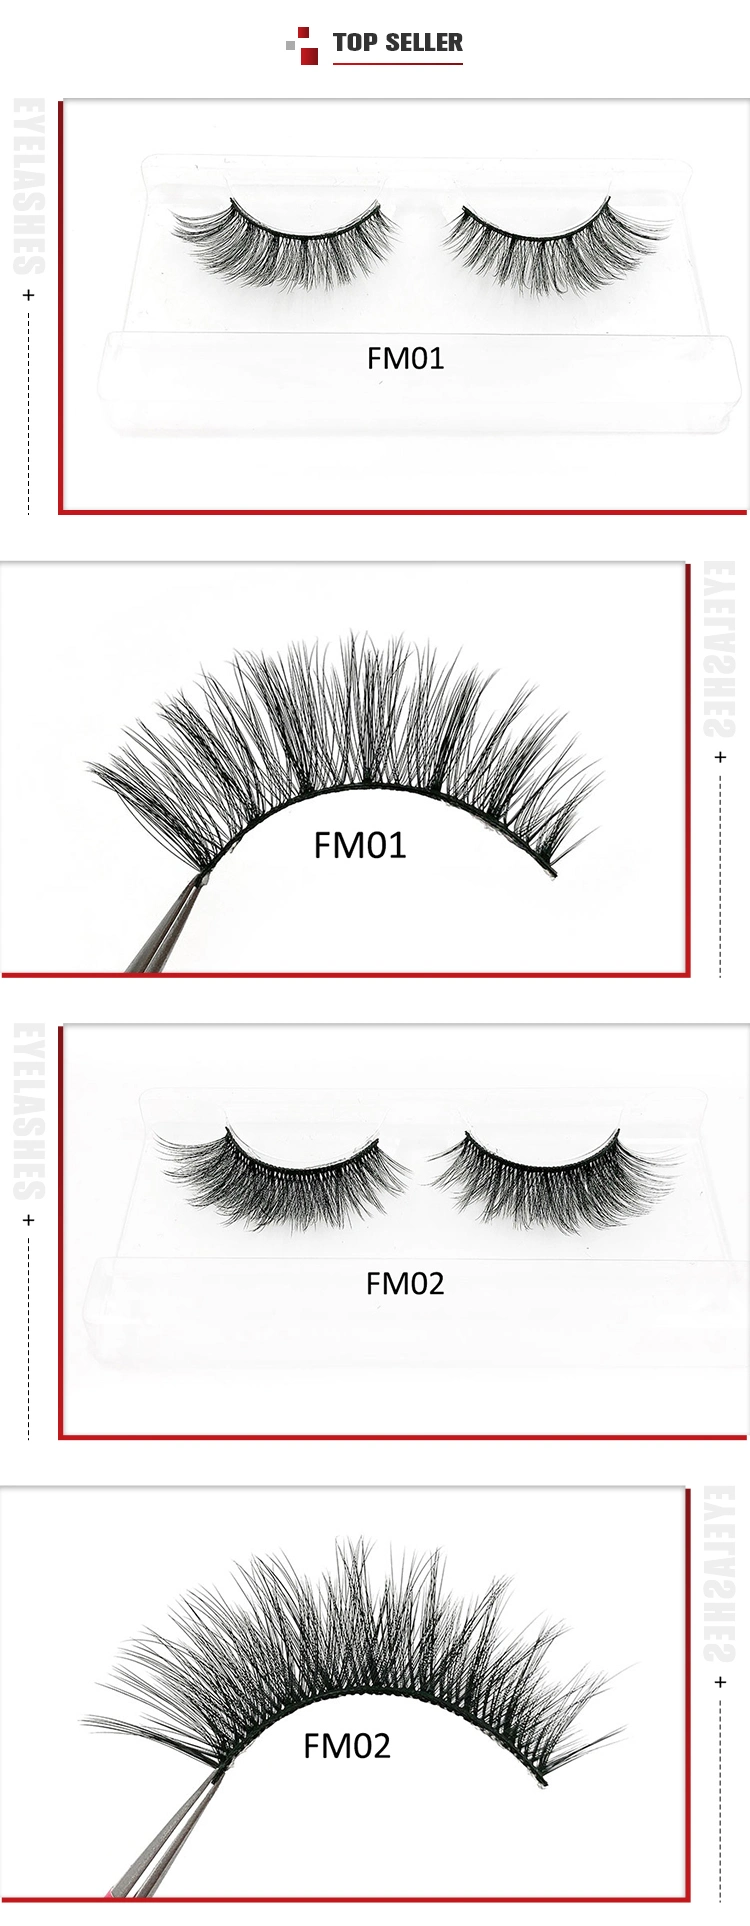 Premium Fluffy Super Soft 7D Mink Eyelashes Private Label False 25 mm 3D Mink Eyelash